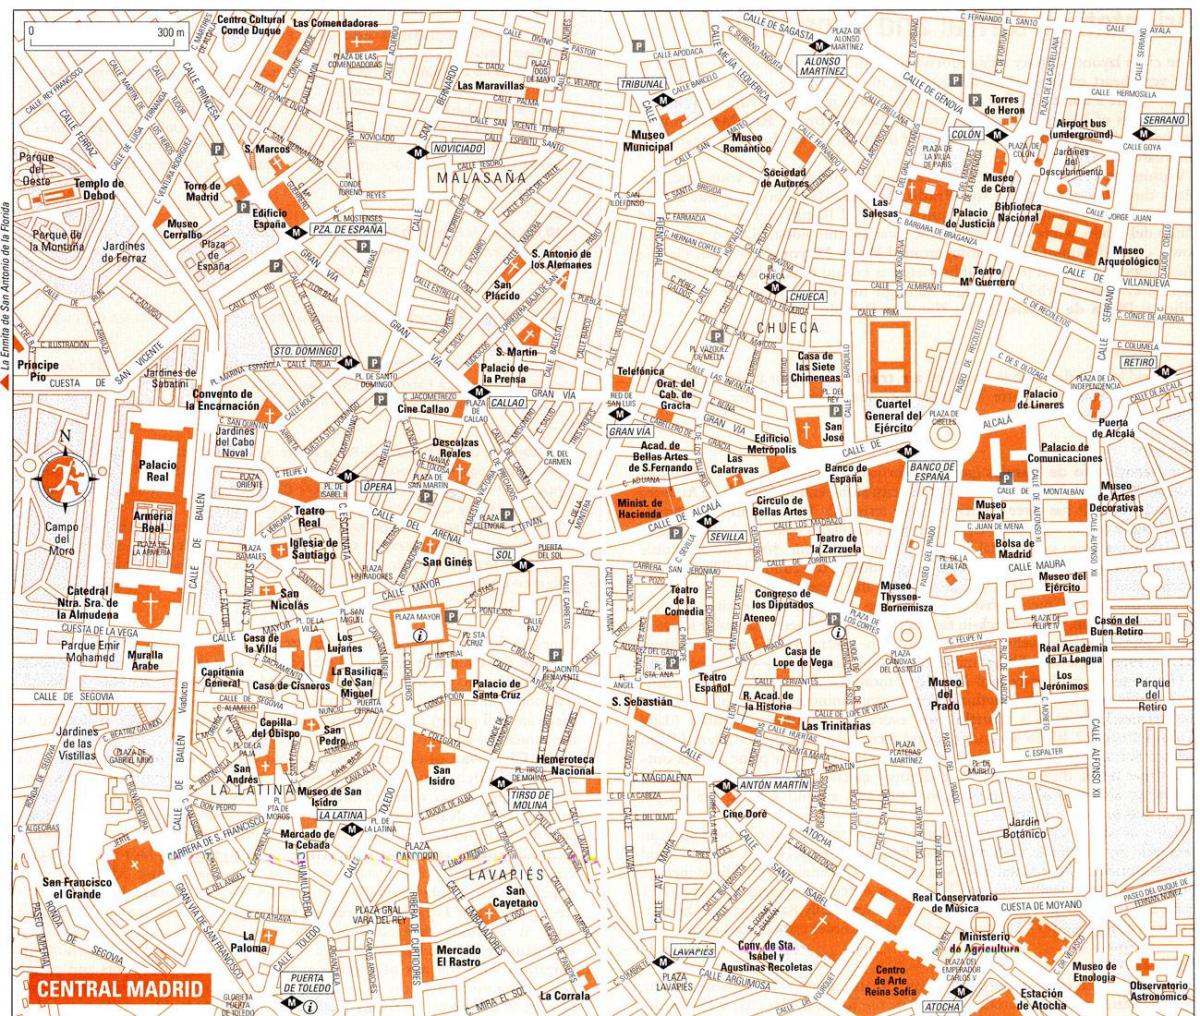 mapa turístic del centre de Madrid